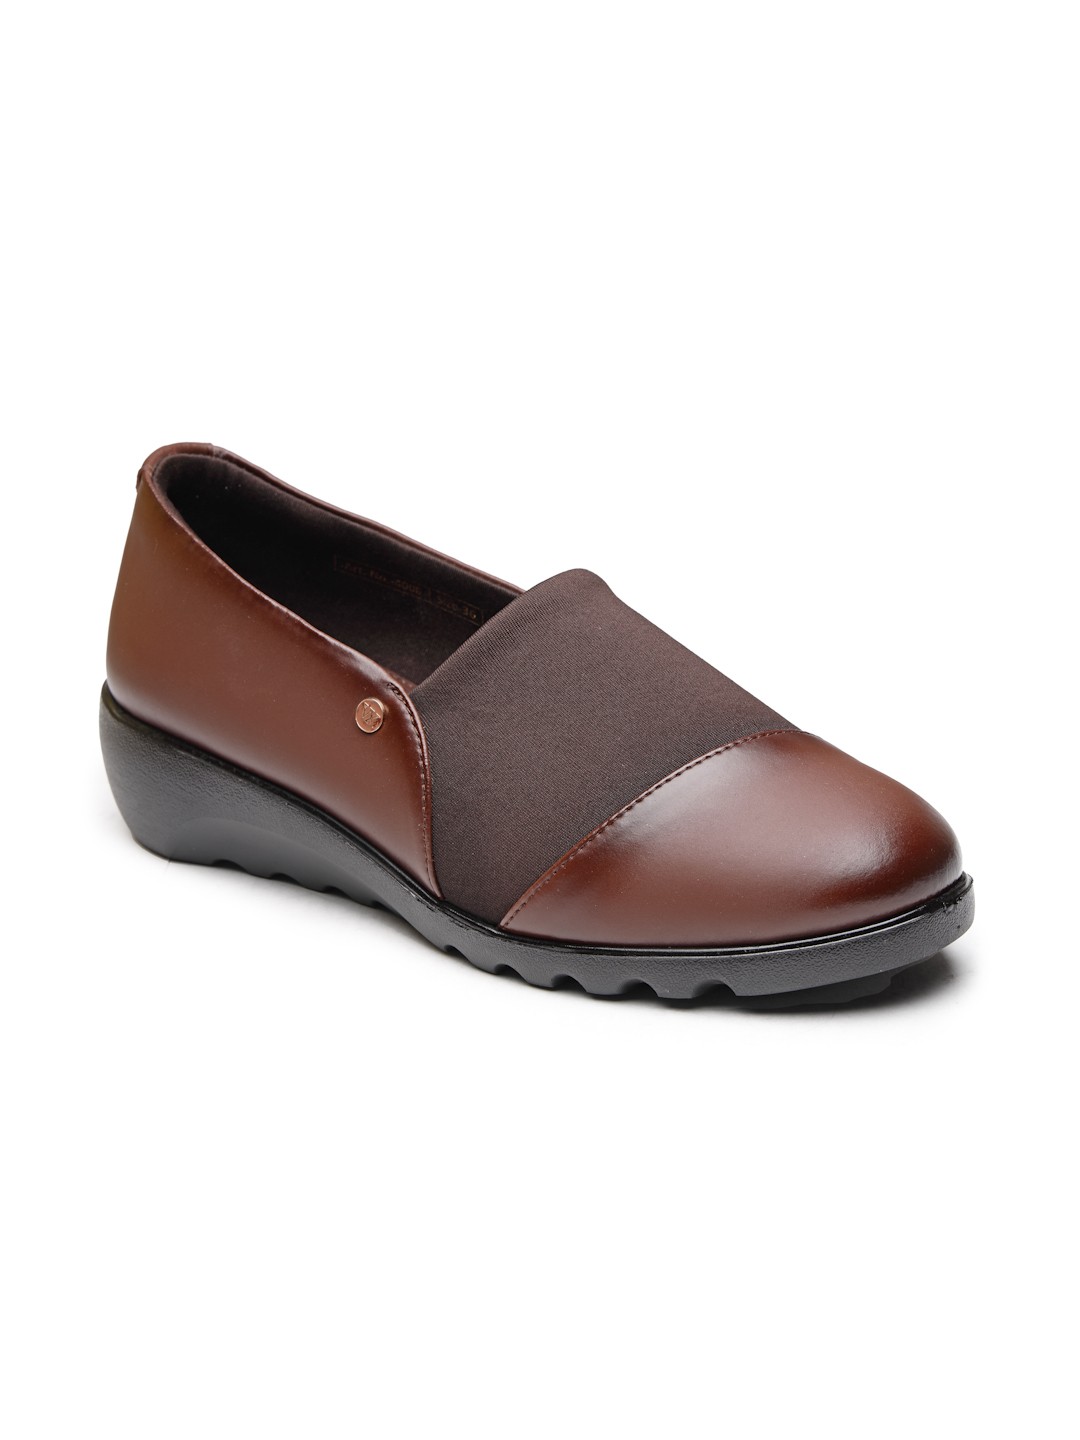 Buy VON WELLX GERMANY comfort women's brown casual shoes AYLA In Delhi